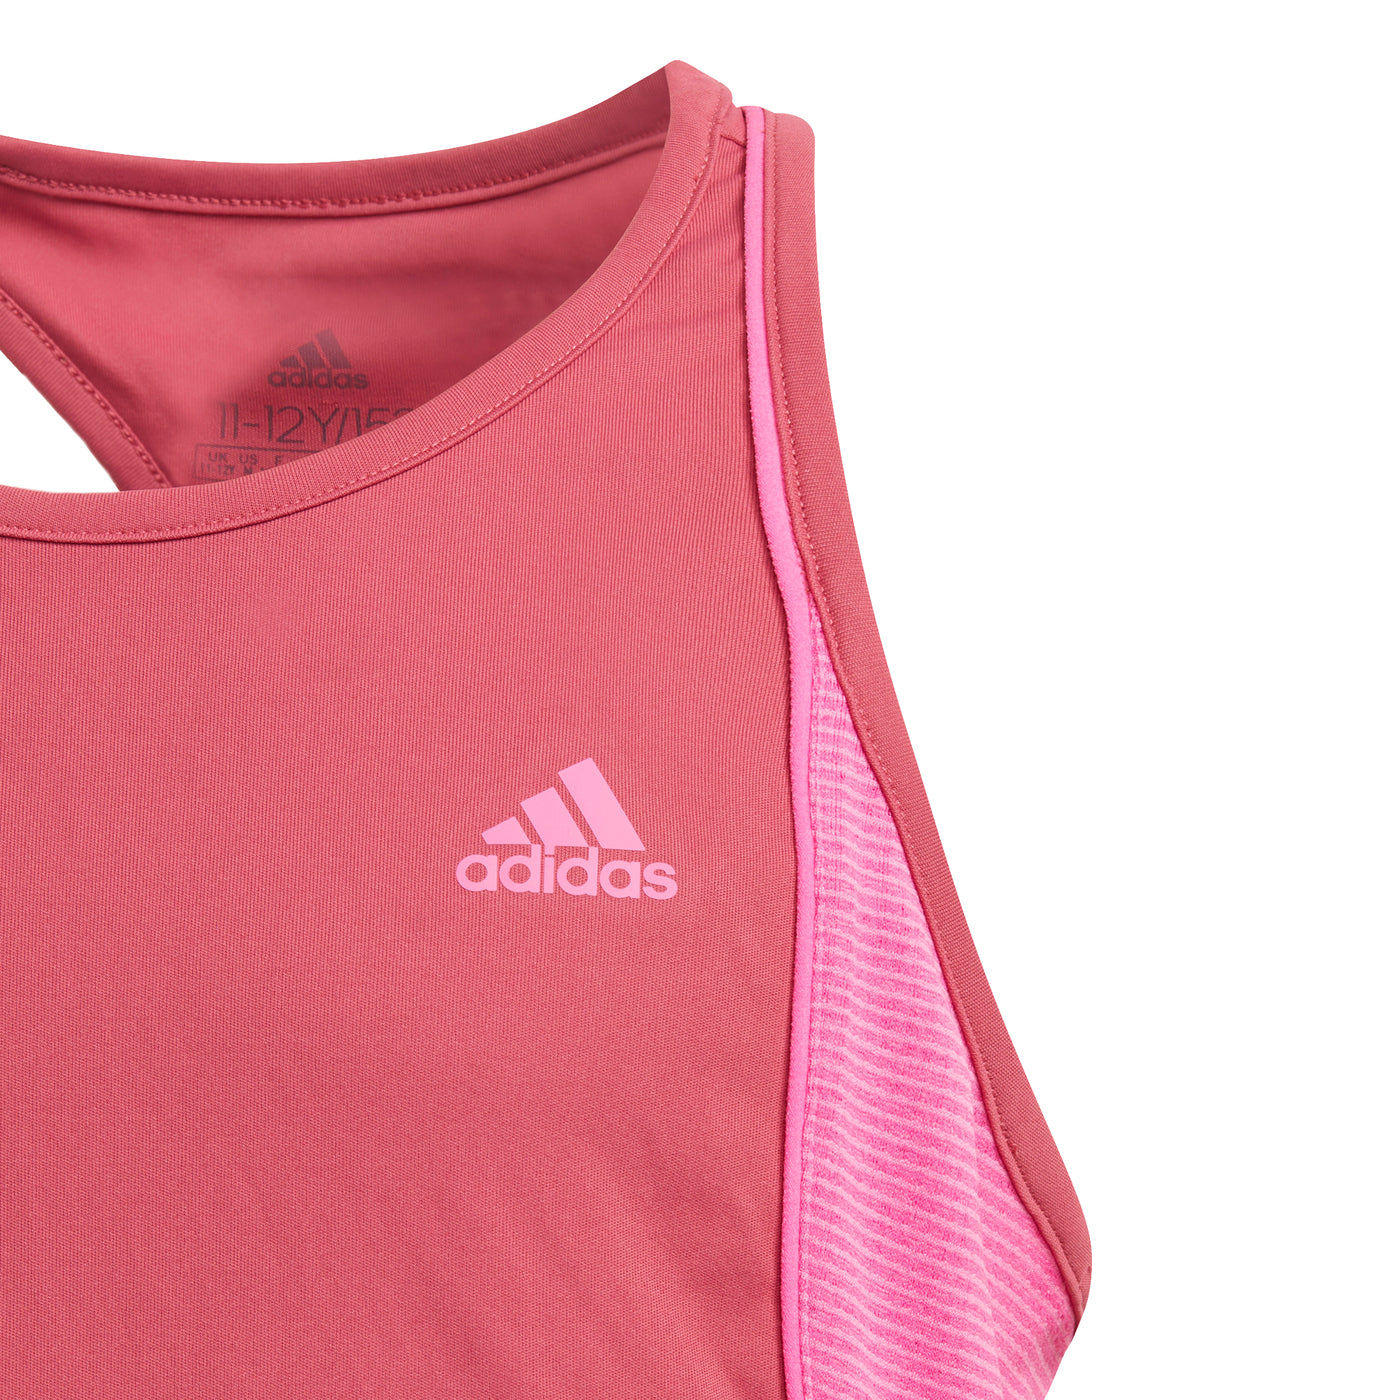 Adidas Girls Pop Up Tank - Wild Pink/Screaming Pink